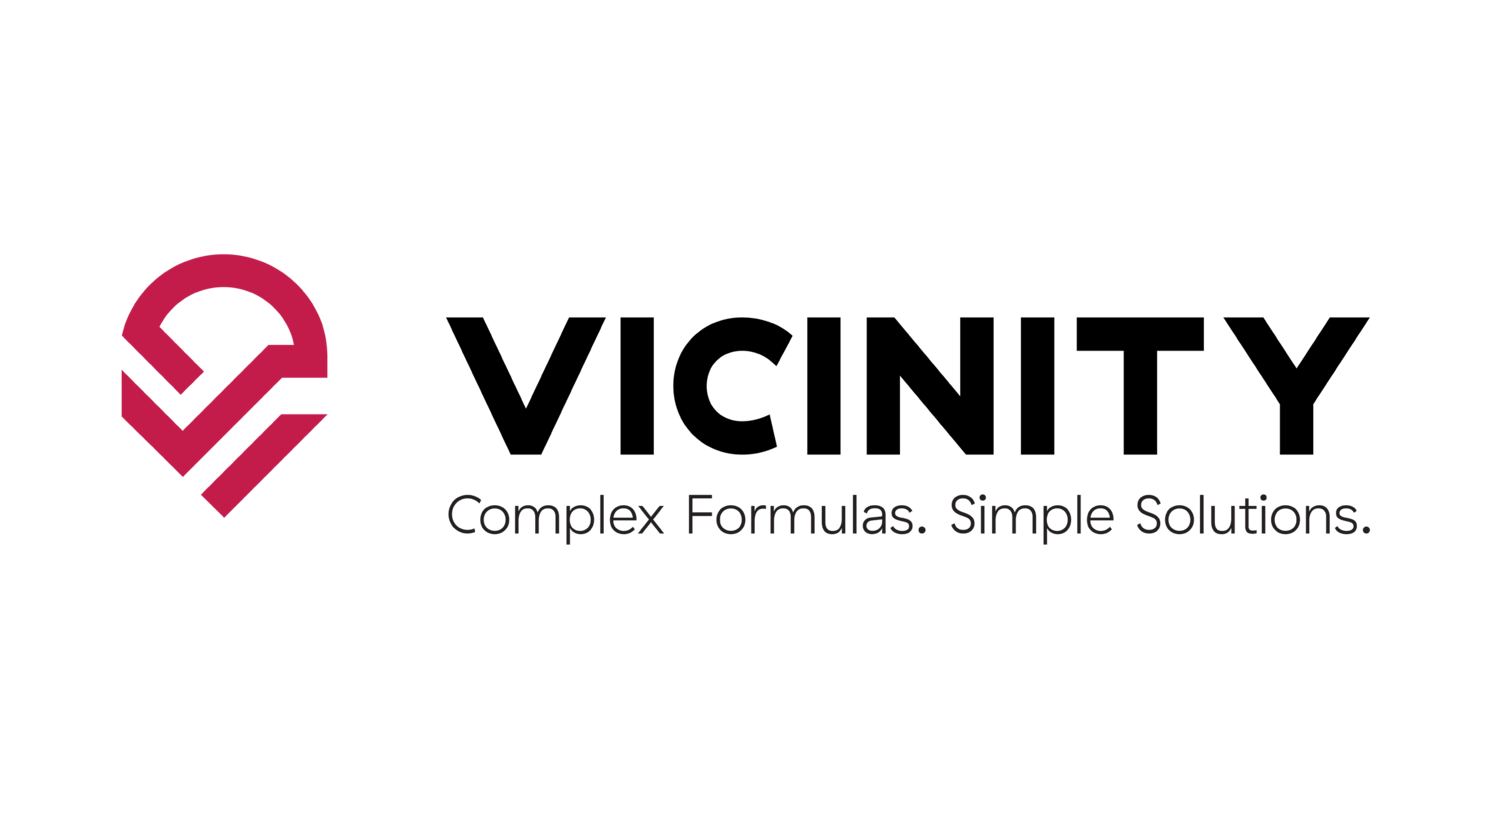 Vicinity Logo With Tagline Rgb 01